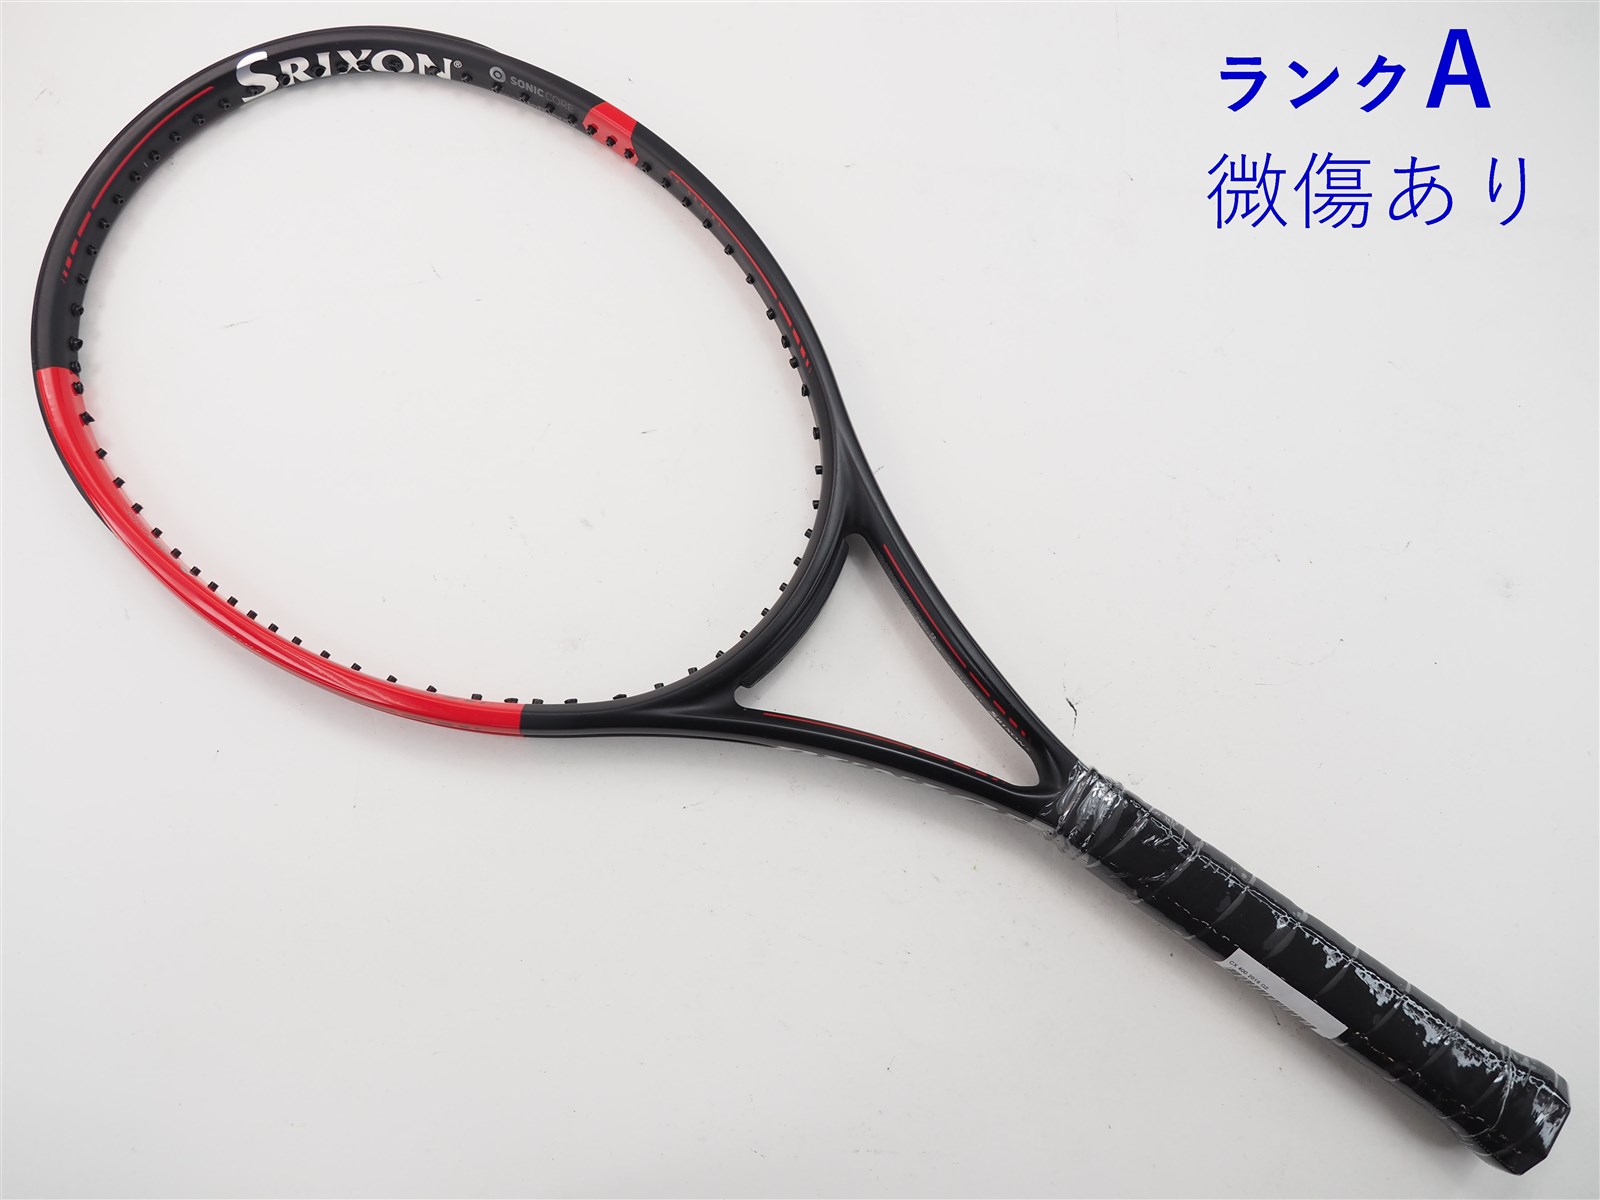 テニスラケット ダンロップ シーエックス 400 2019年モデル (G1)DUNLOP